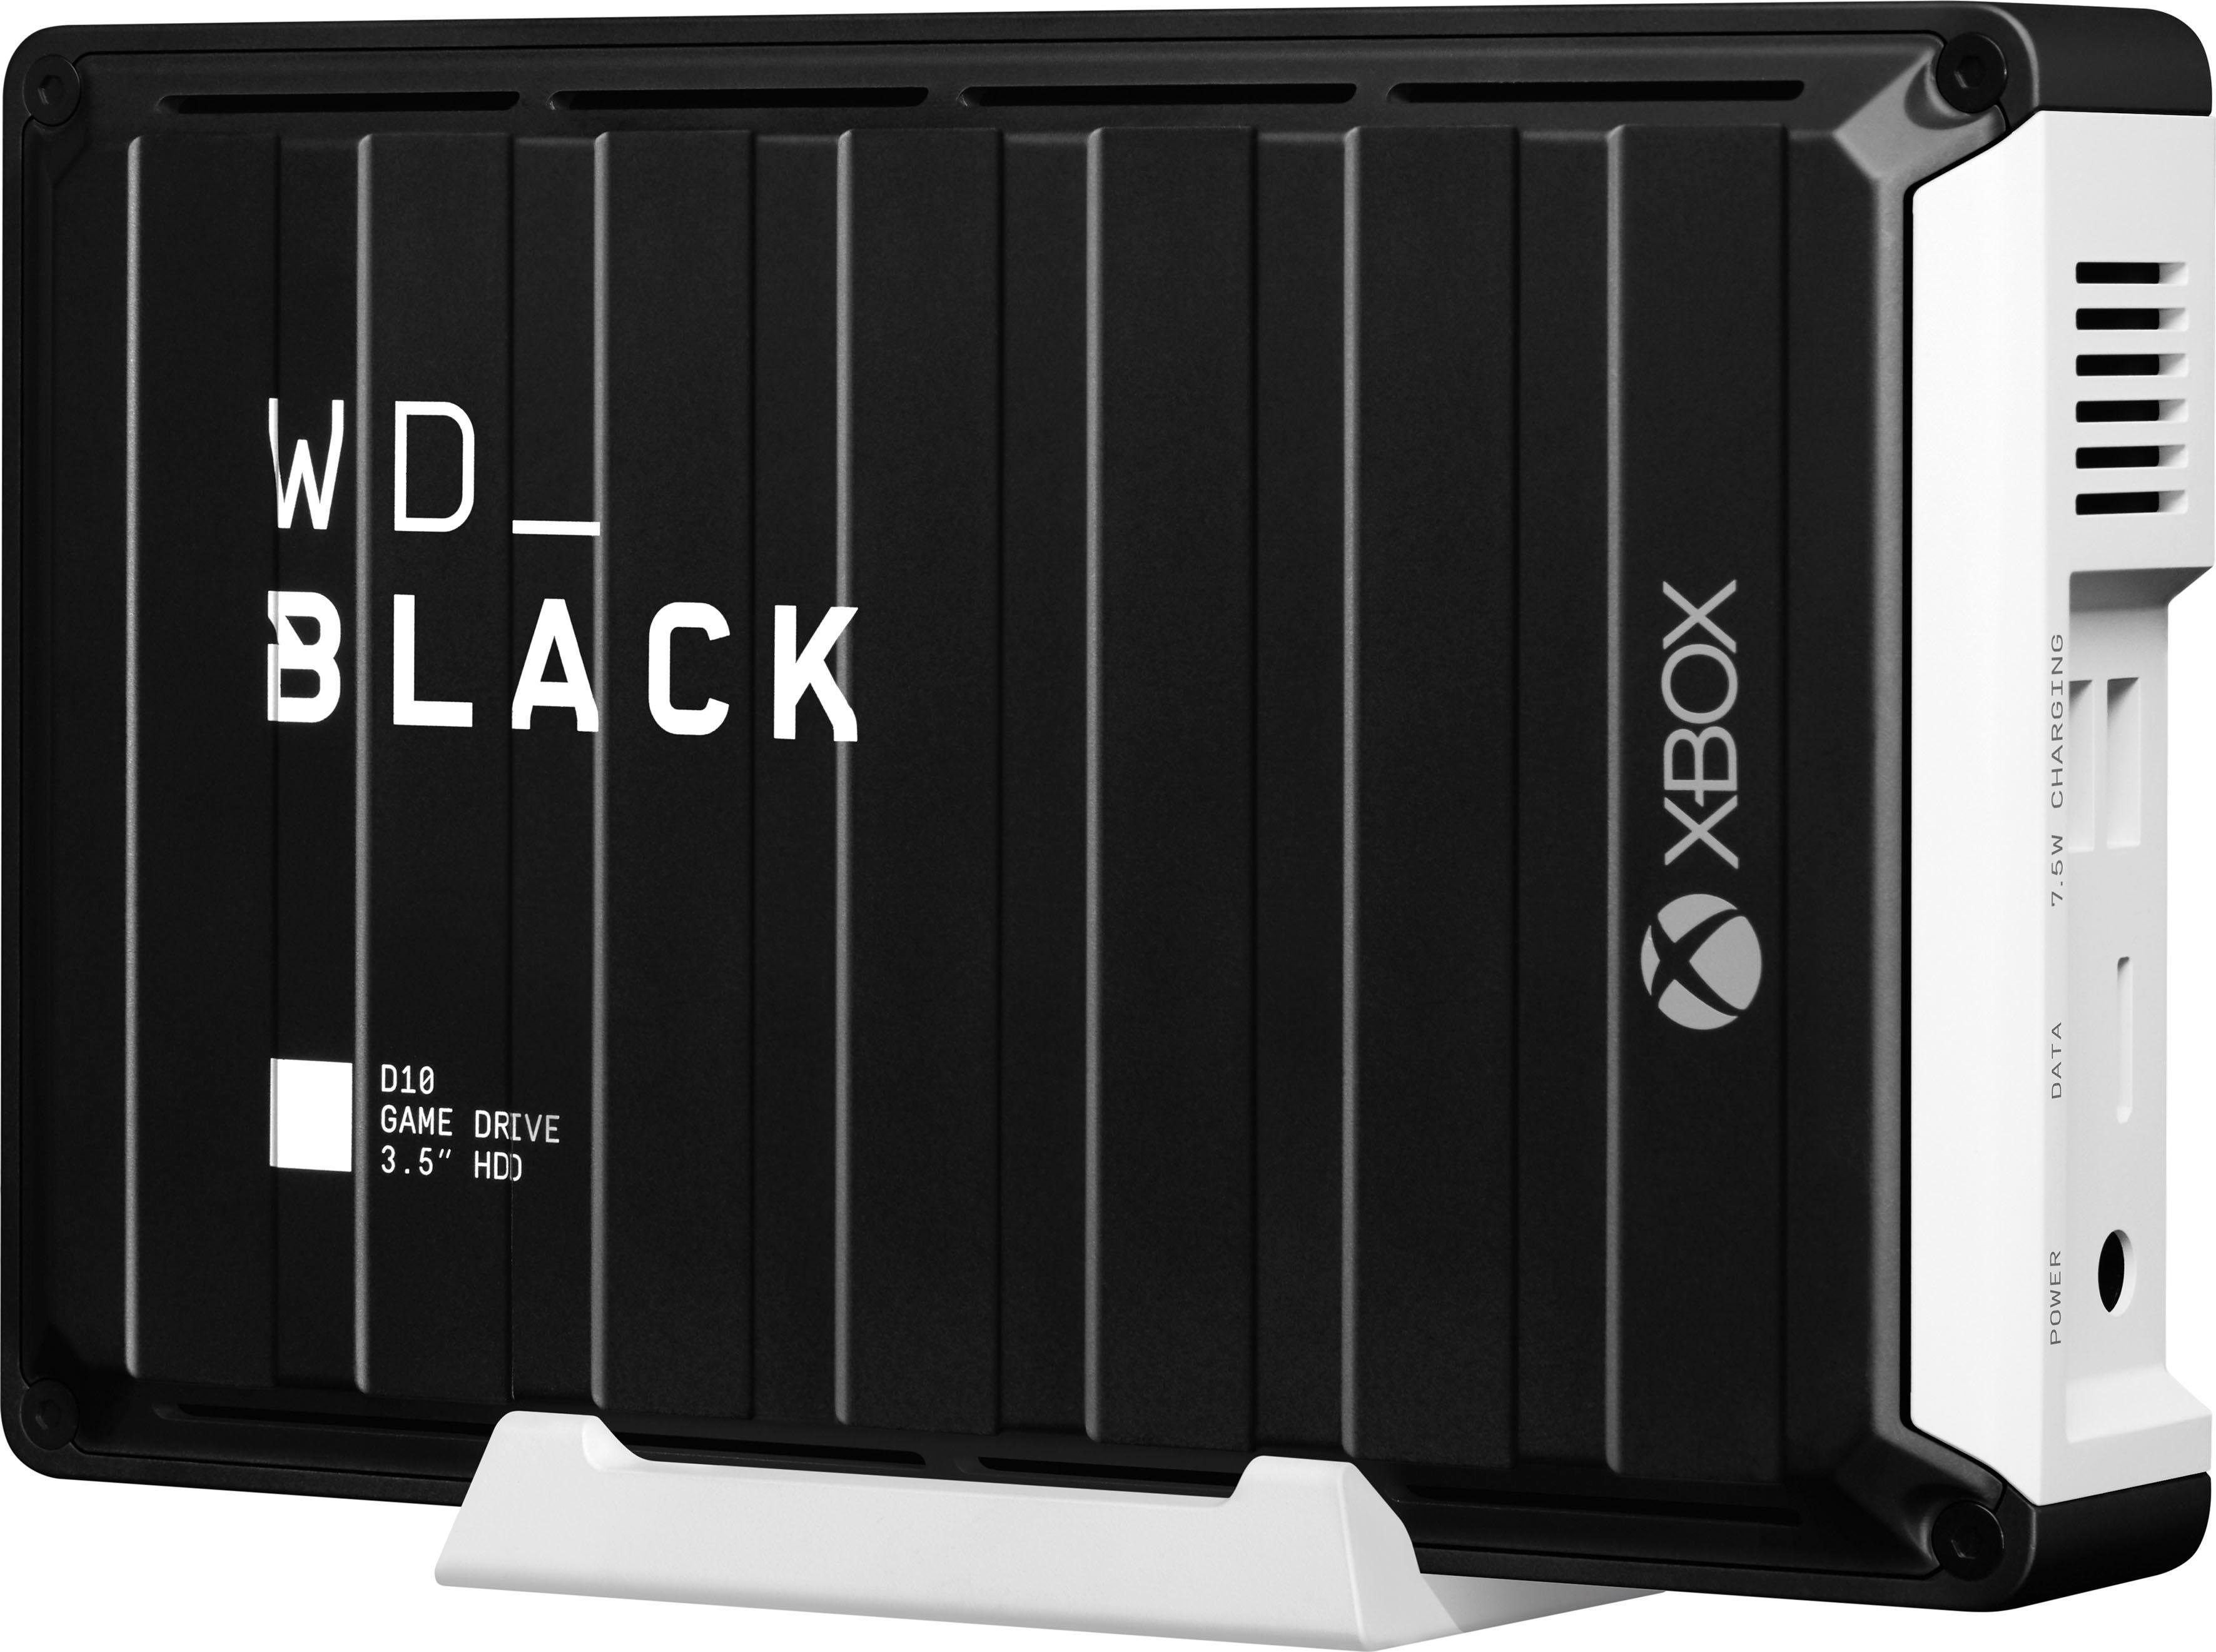 WD_Black »D10 Game Drive XBOX« externe Gaming-Festplatte (12 TB) 3,5" 250  MB/S Lesegeschwindigkeit) online kaufen | OTTO